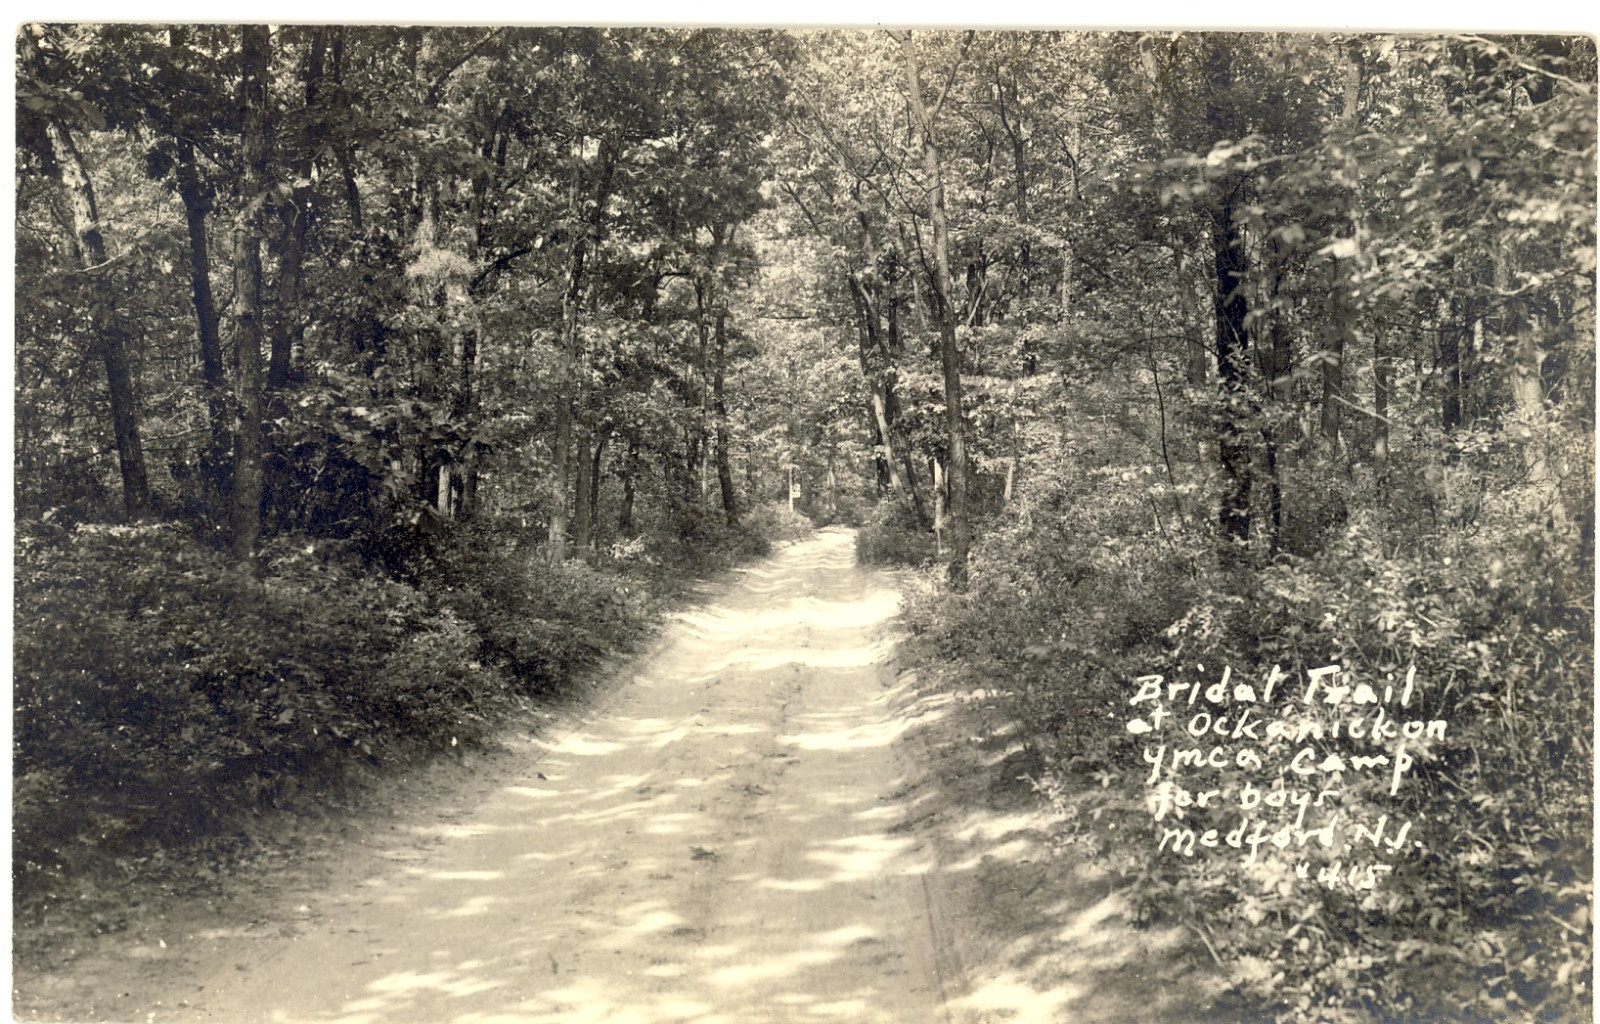 Medford - Bridal Path at Camp Ockanickon - c 1940